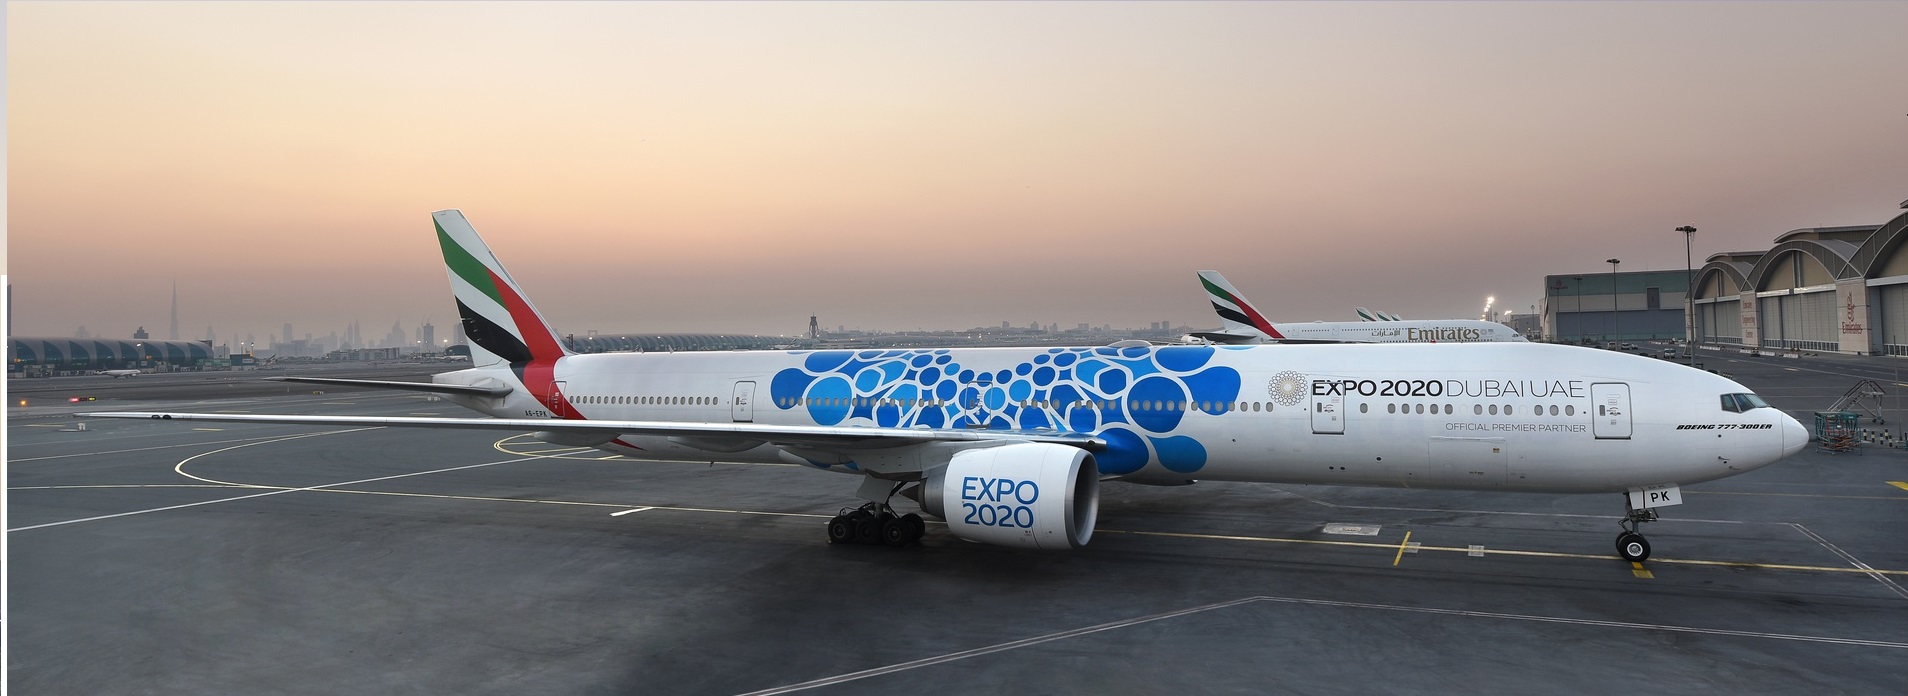 Emirates repülőjegyek akciós áron Dubaiba + EXPO belépő